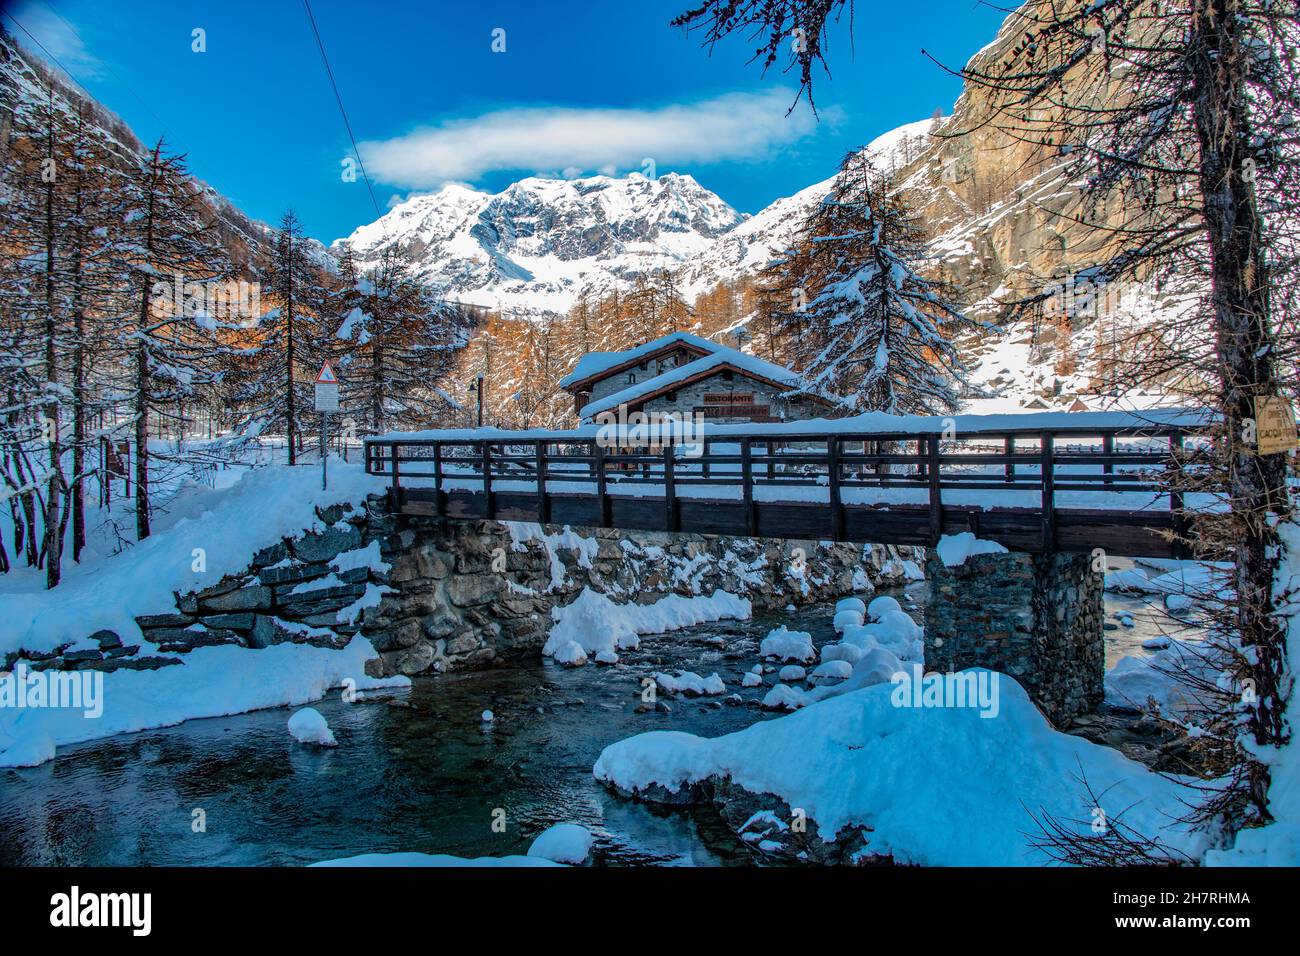 Ceresole reale, Gran Paradiso National Park, typisches Chalet und verschneite Szene, Piemonte, Italien Stockfoto